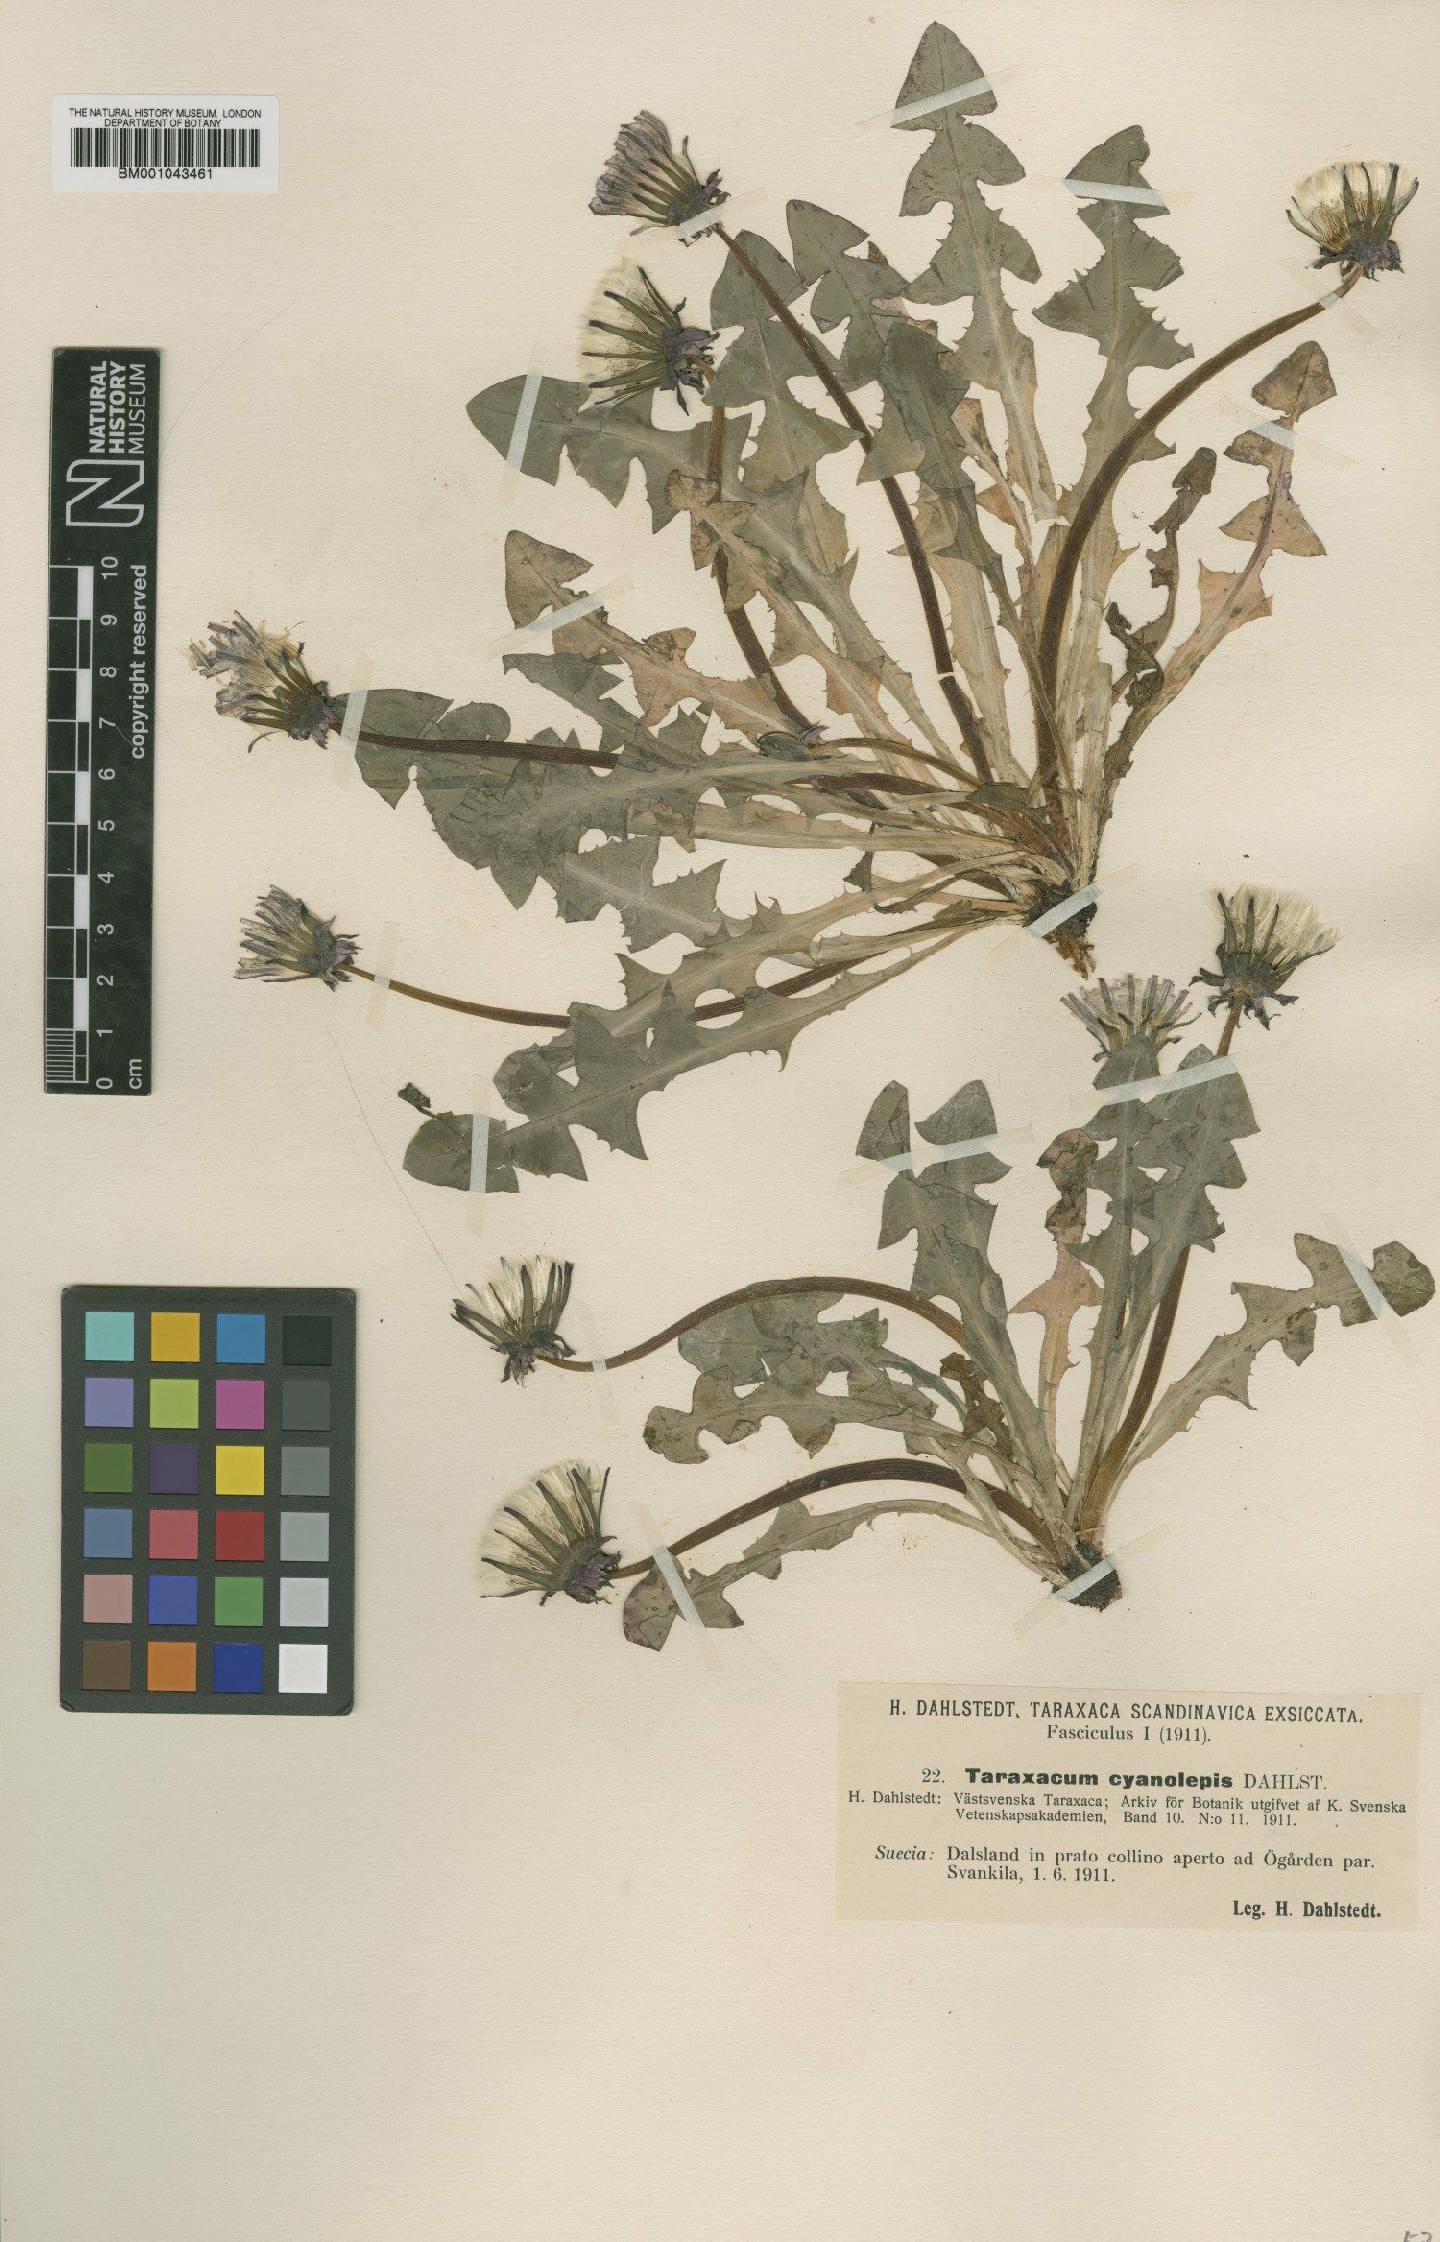 To NHMUK collection (Taraxacum cyanolepis Dahlst; Type; NHMUK:ecatalogue:1998337)